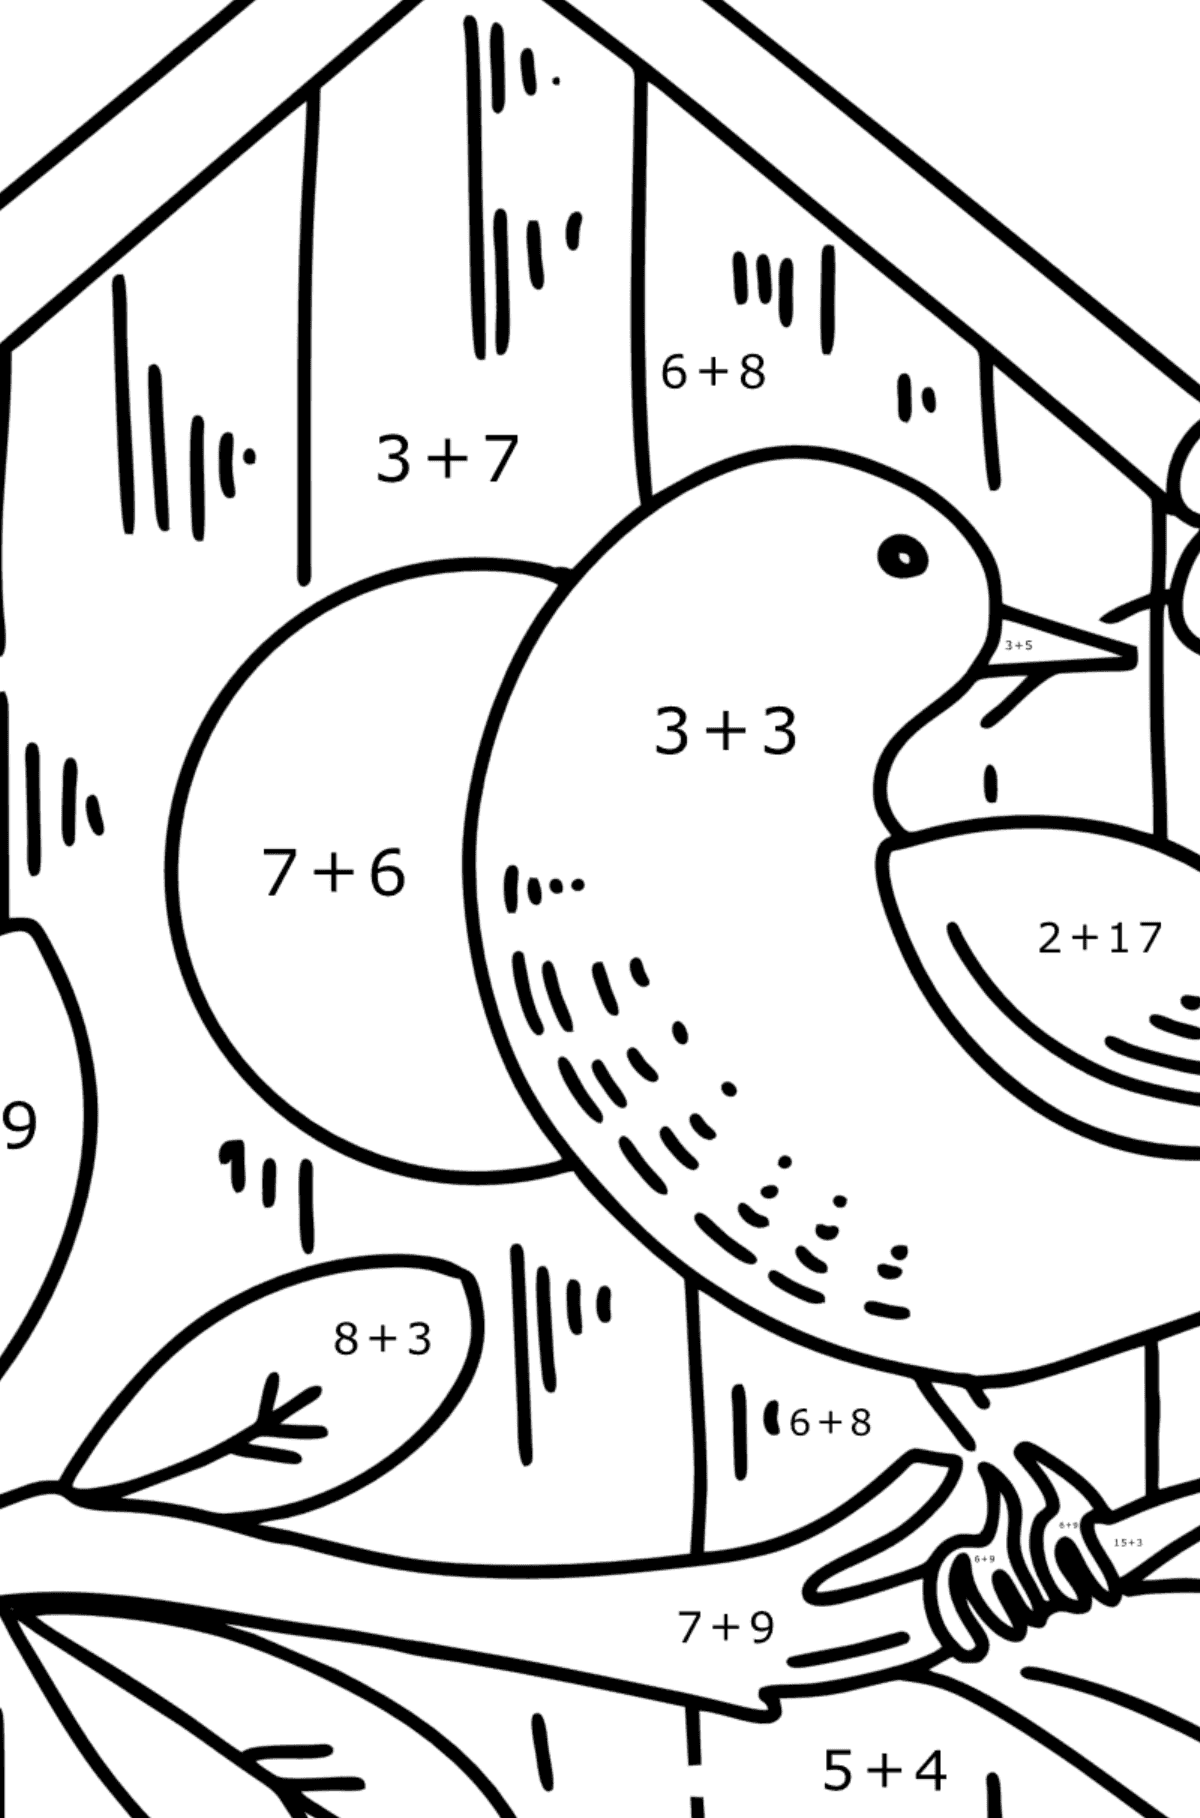 Omalovánka špaček u ptačí budky - Matematická Omalovánka - Sčítání pro děti